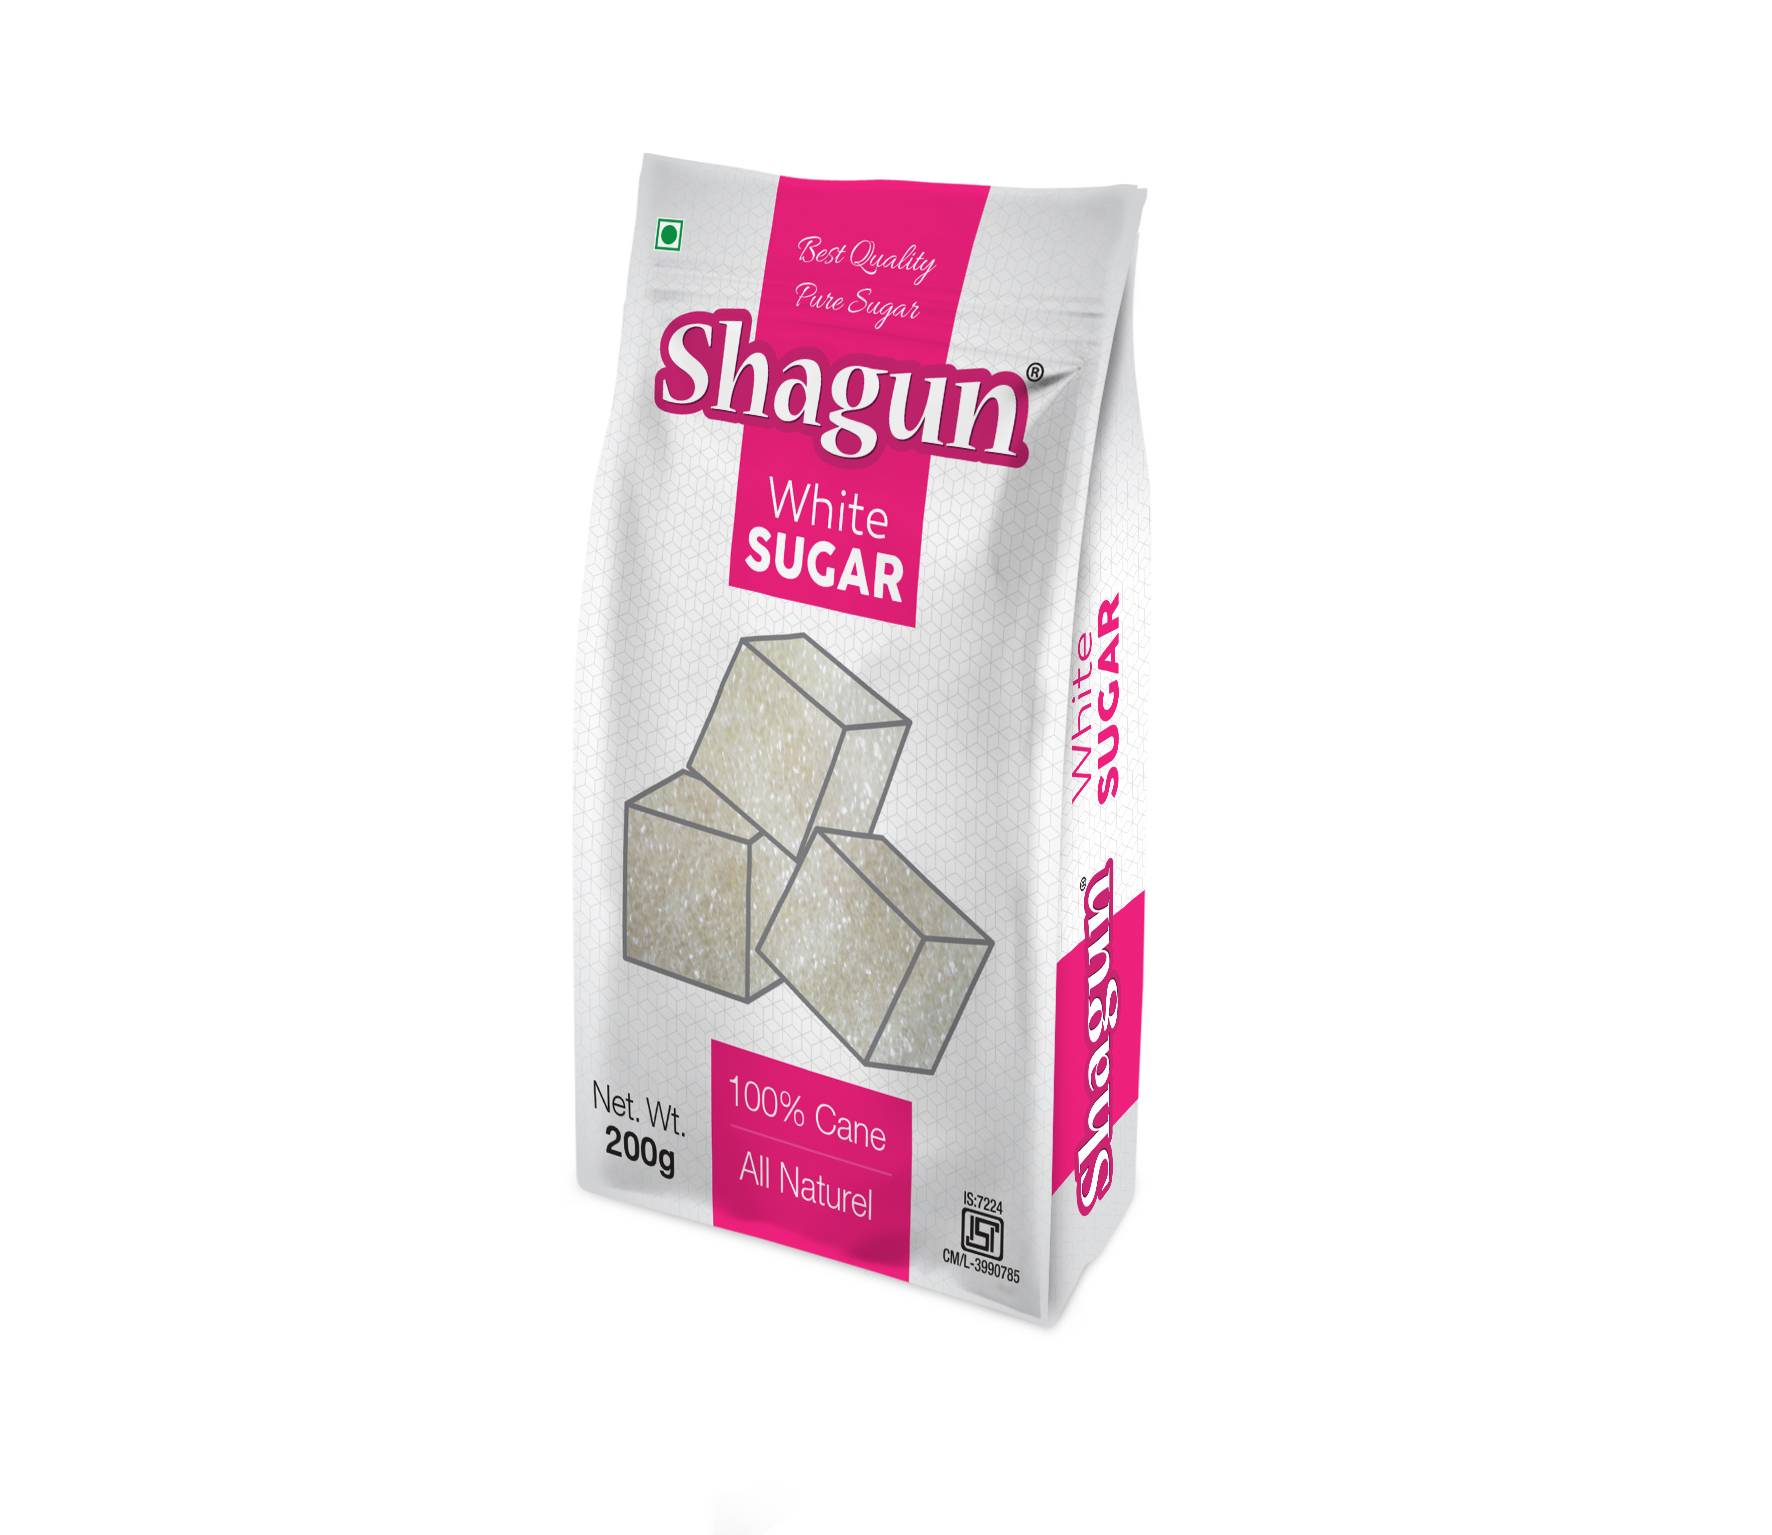 Shagun White Sugar